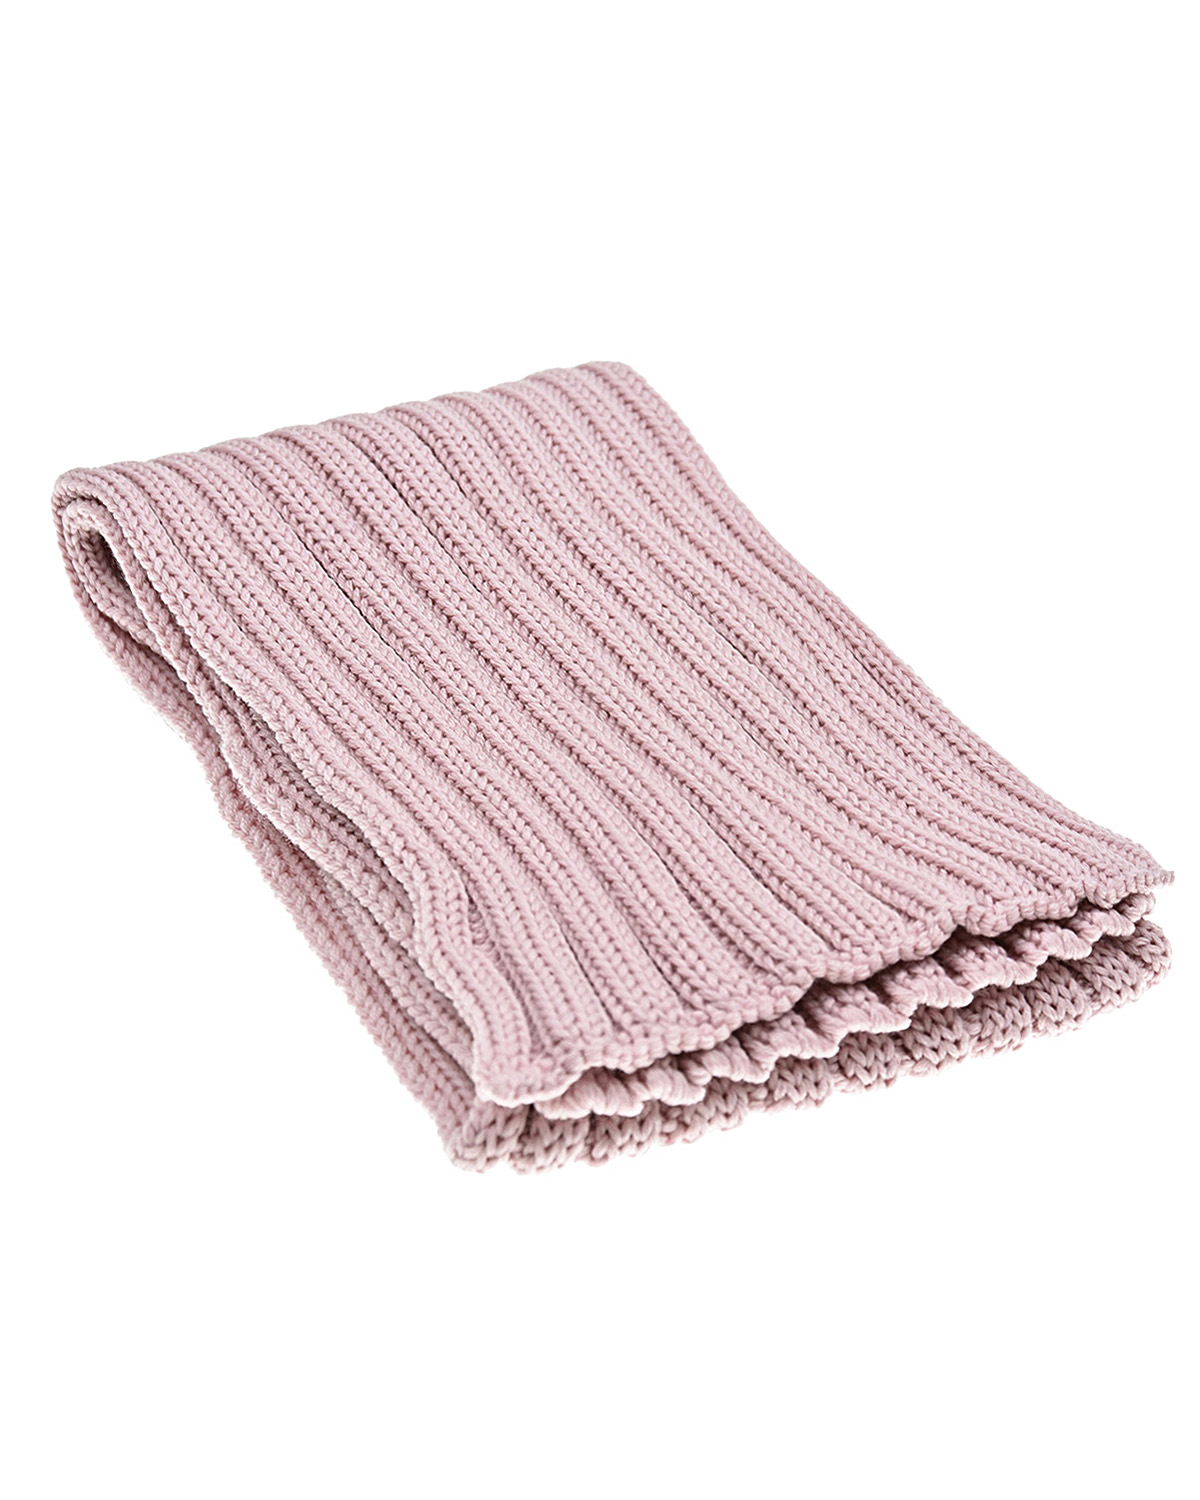 Розовый шерстяной шарф Catya детский, размер unica - фото 1